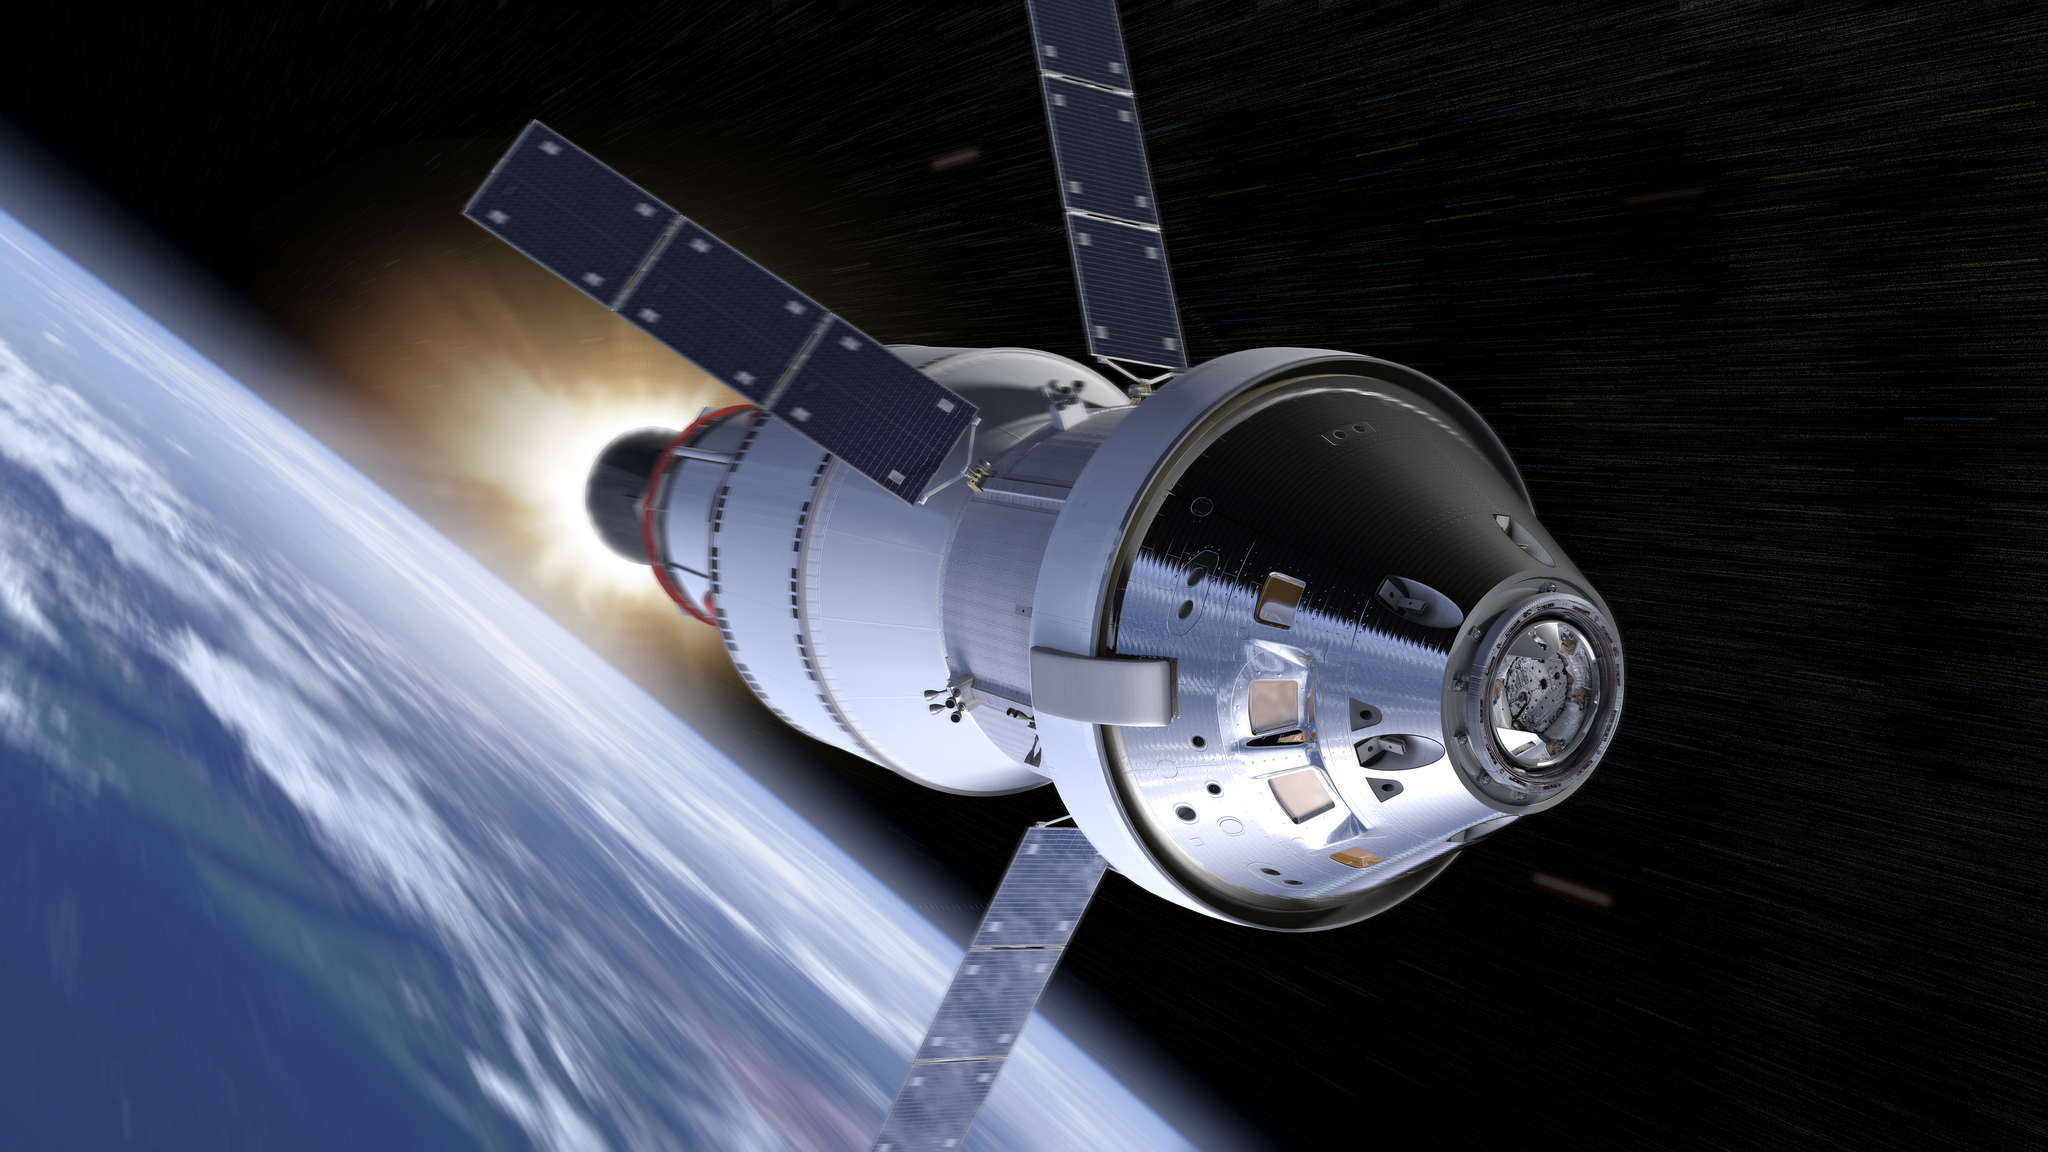 NASA still aiming for 2024 moon landing despite SLS megarocket delays